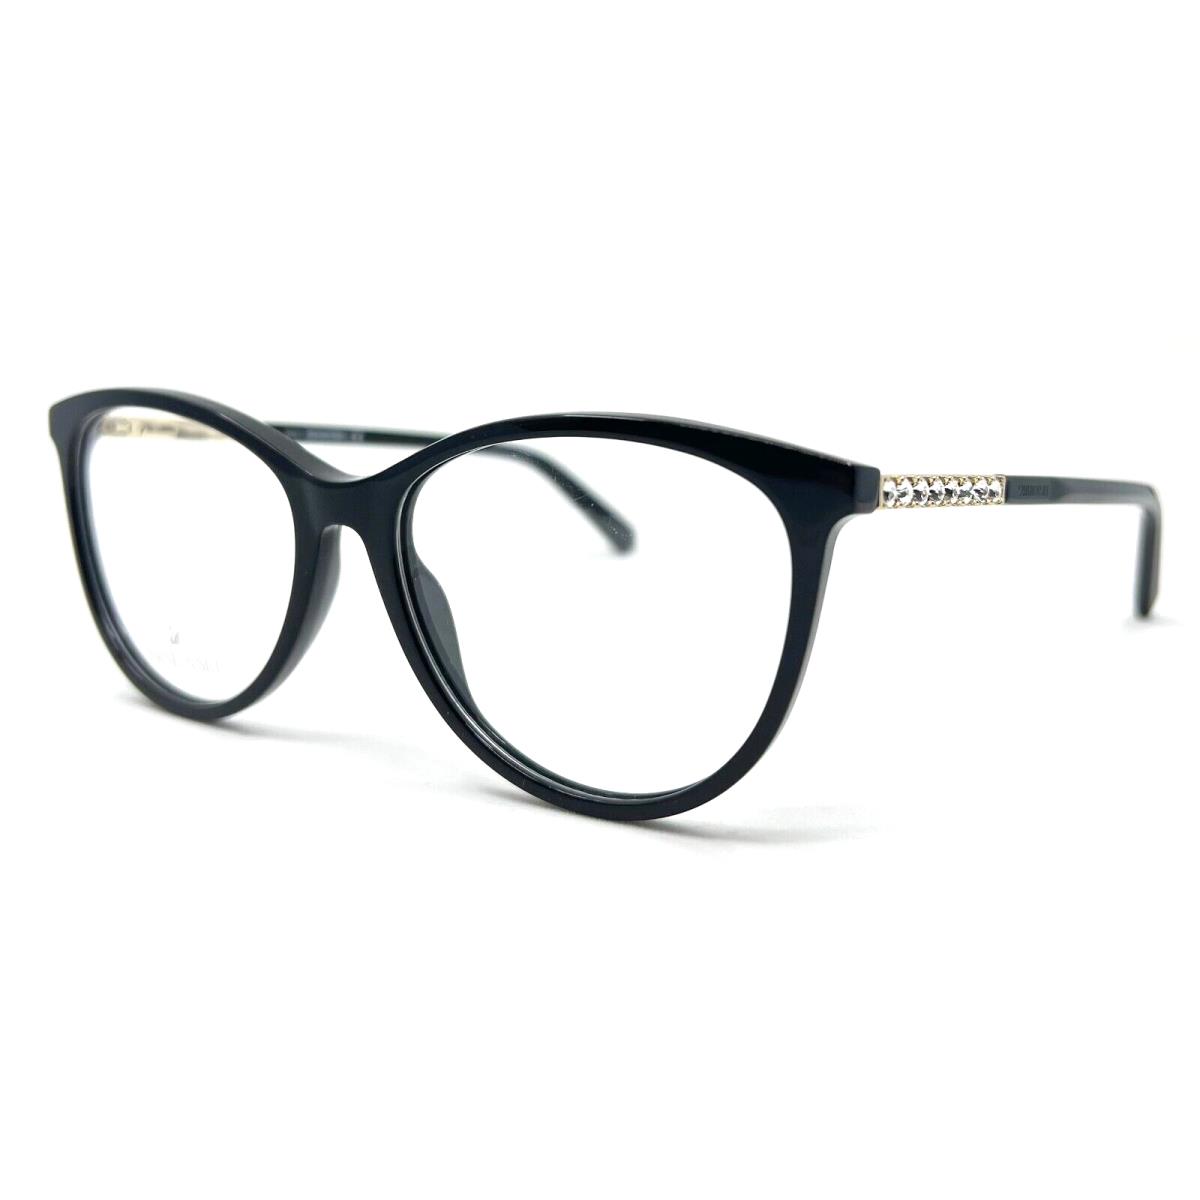 Swarovski - SK5396 001 52/15/145 - Black - Eyeglasses Case